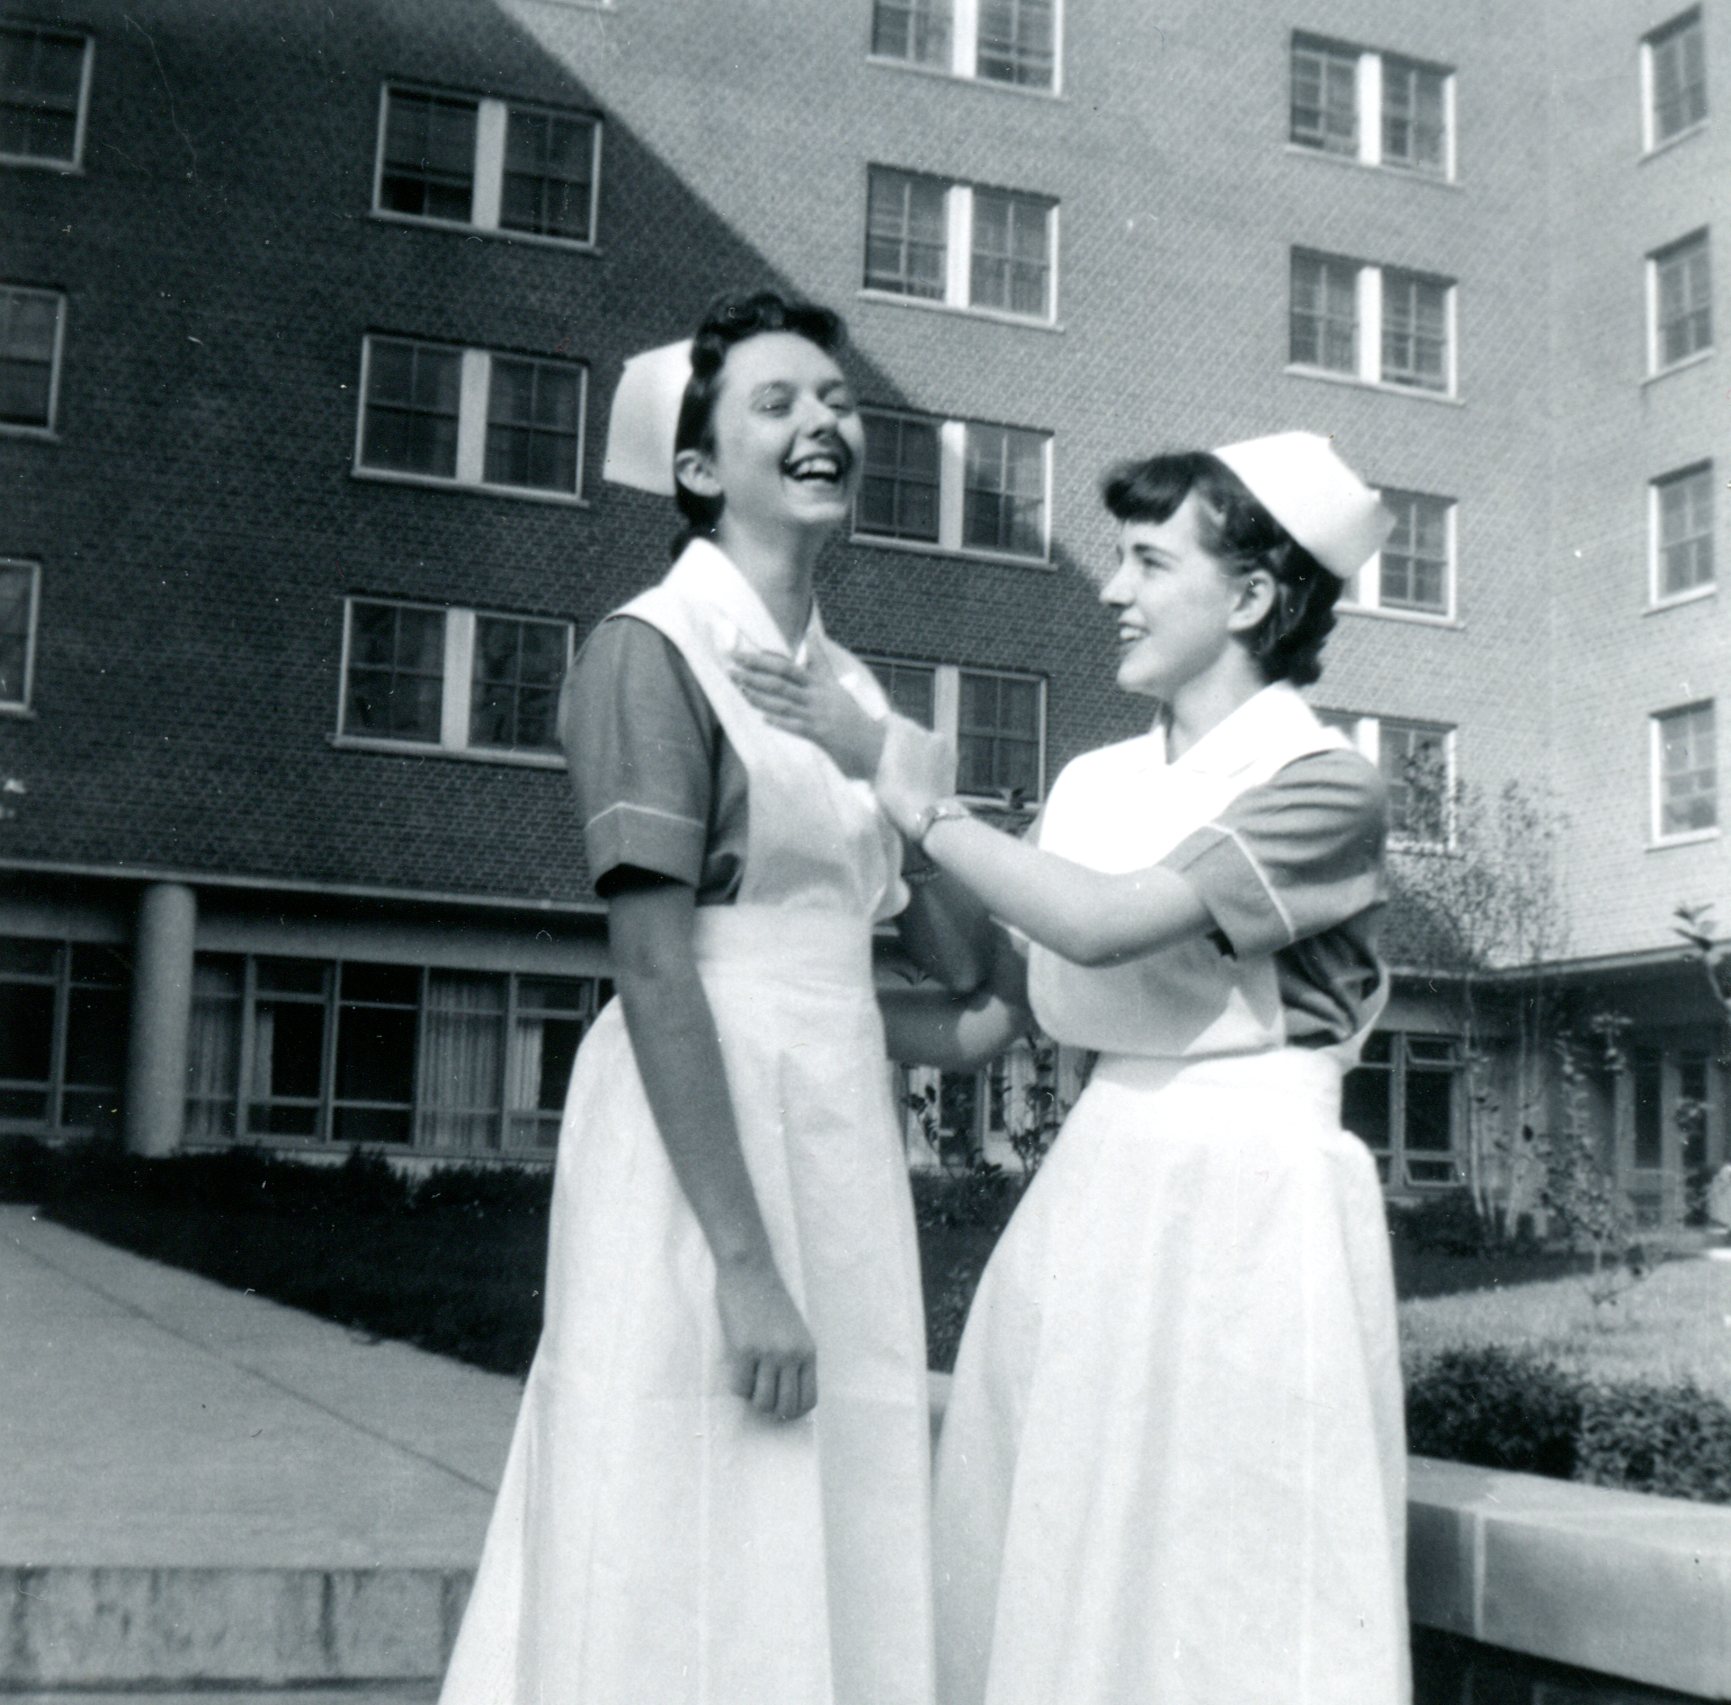 Deux jeunes femmes portant l’uniforme et la coiffe d’infirmière plaisantent affectueusement devant un grand immeuble en briques.